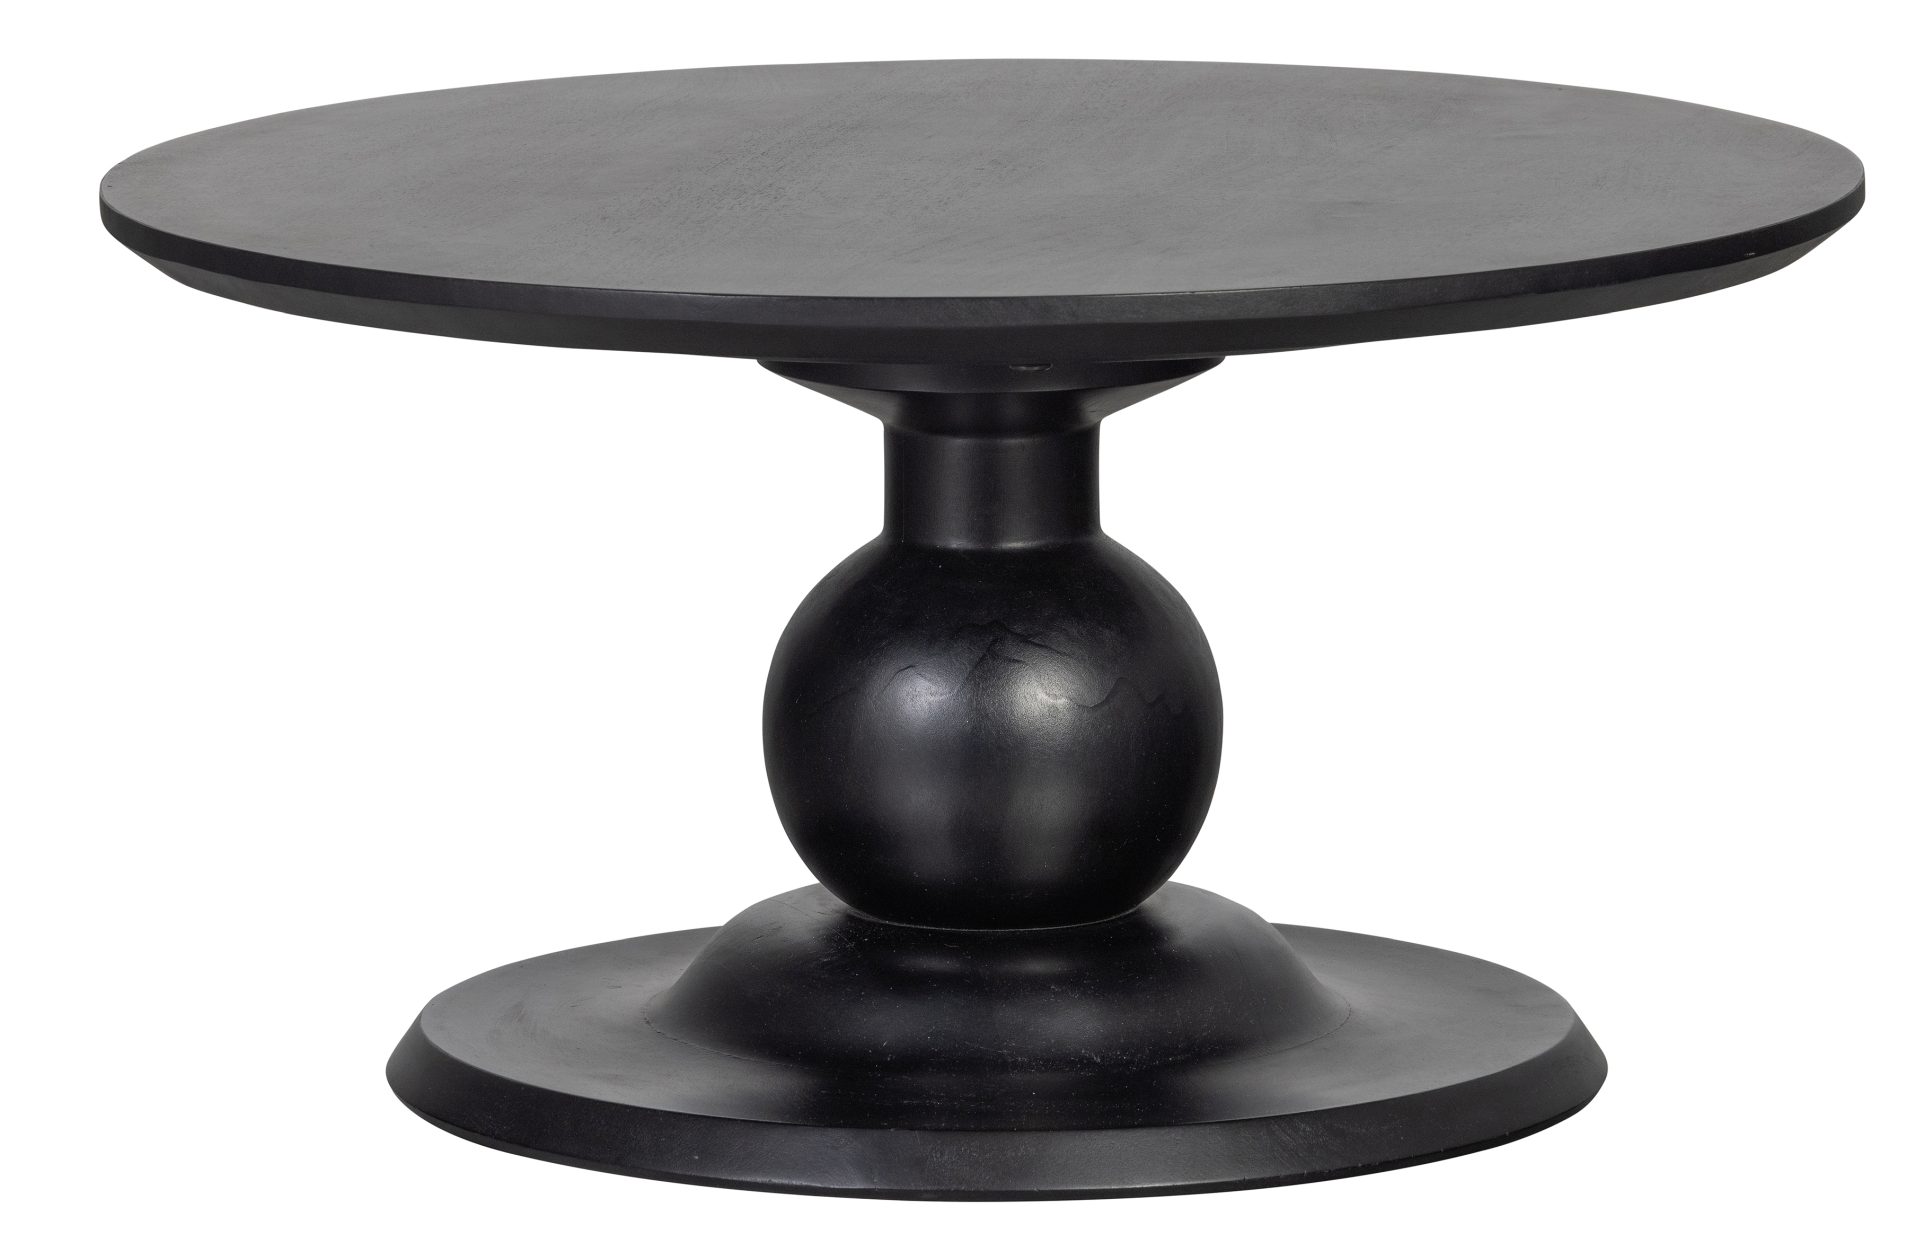 Der Couchtisch Blanco überzeugt mit seinem modernen Design. Gefertigt wurde der Tisch aus Holz und hat einen schwarzen Farbton.